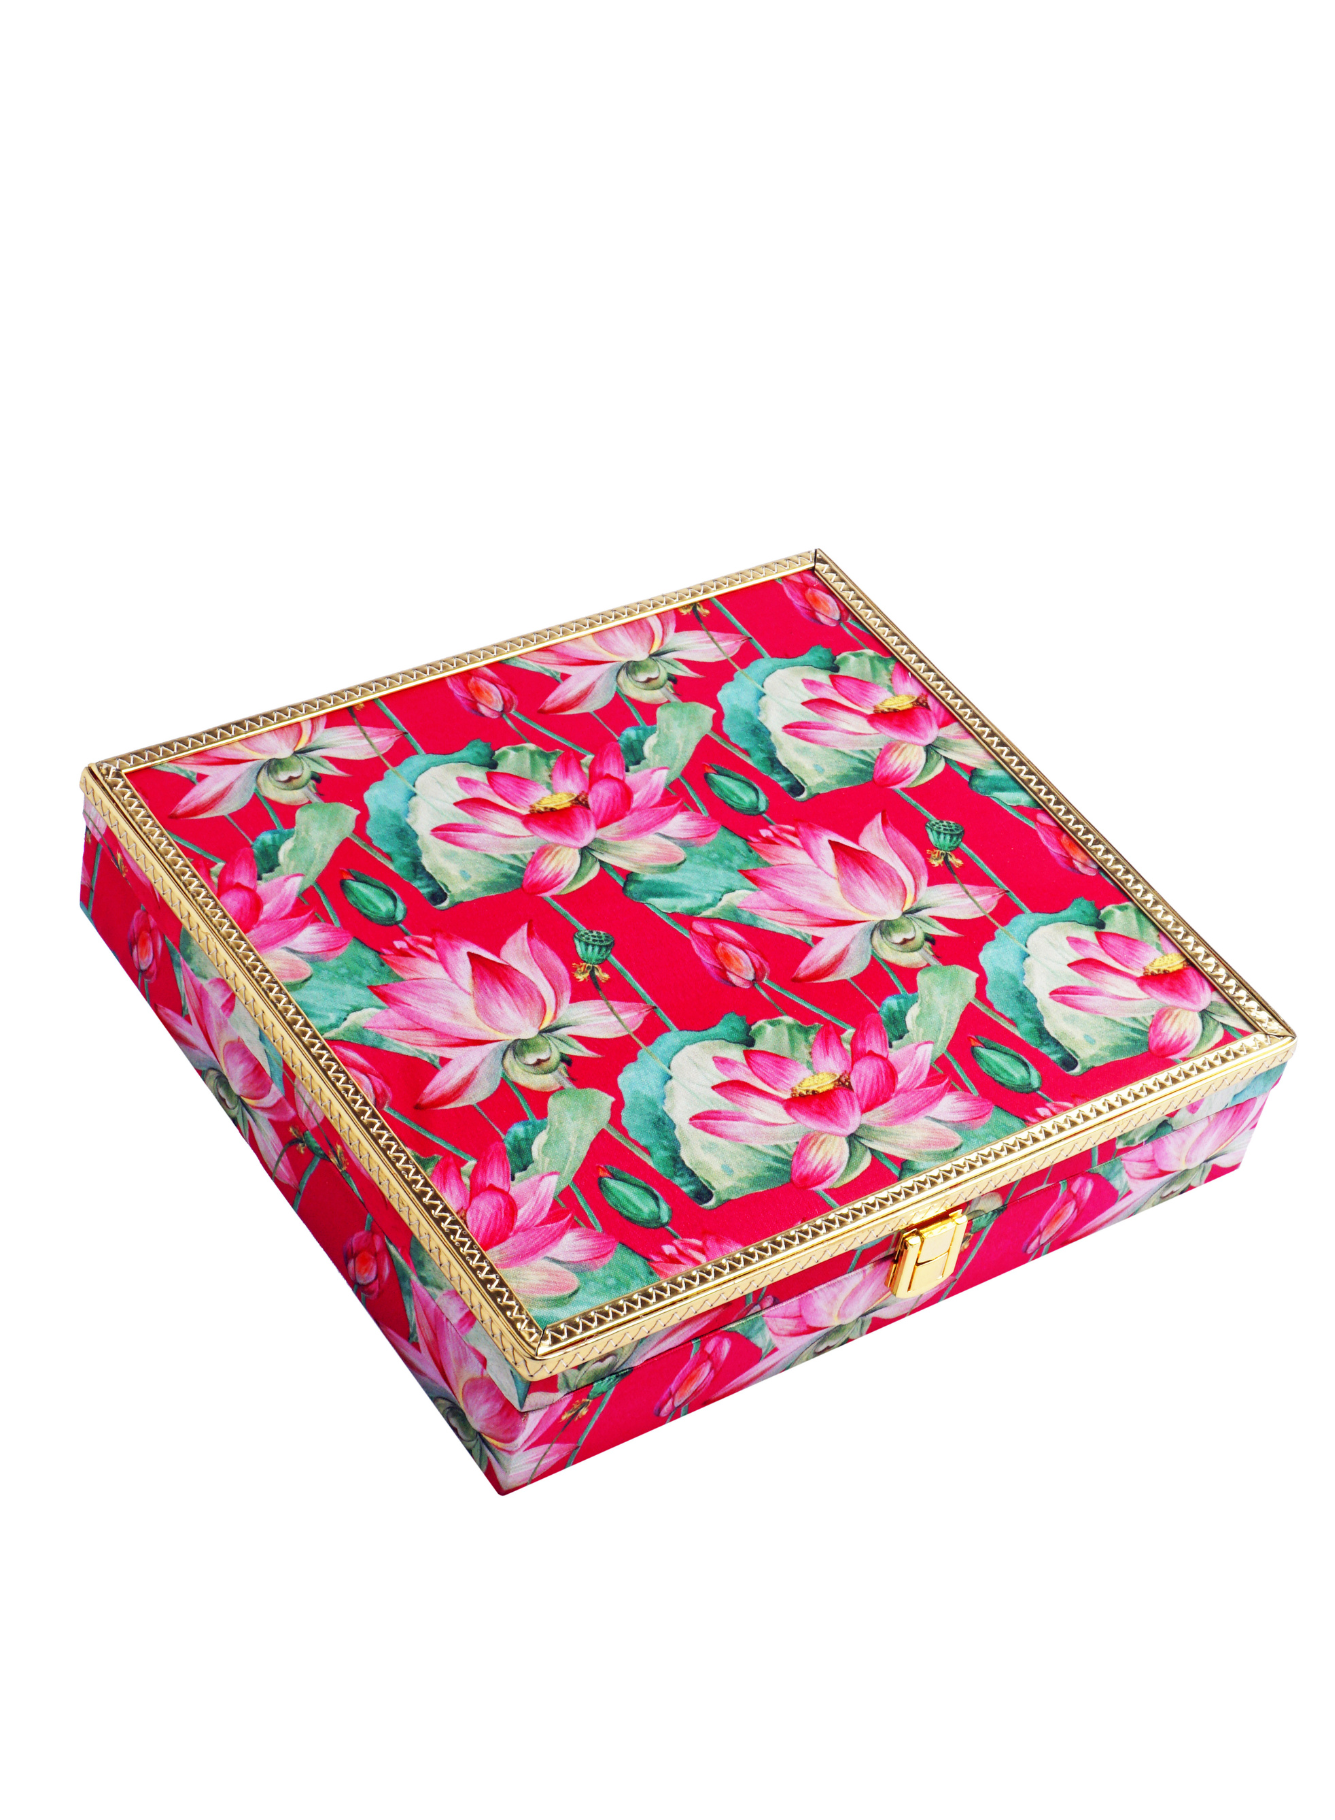 Safawi Dates with Blooming Lotus Box (50 Pcs)